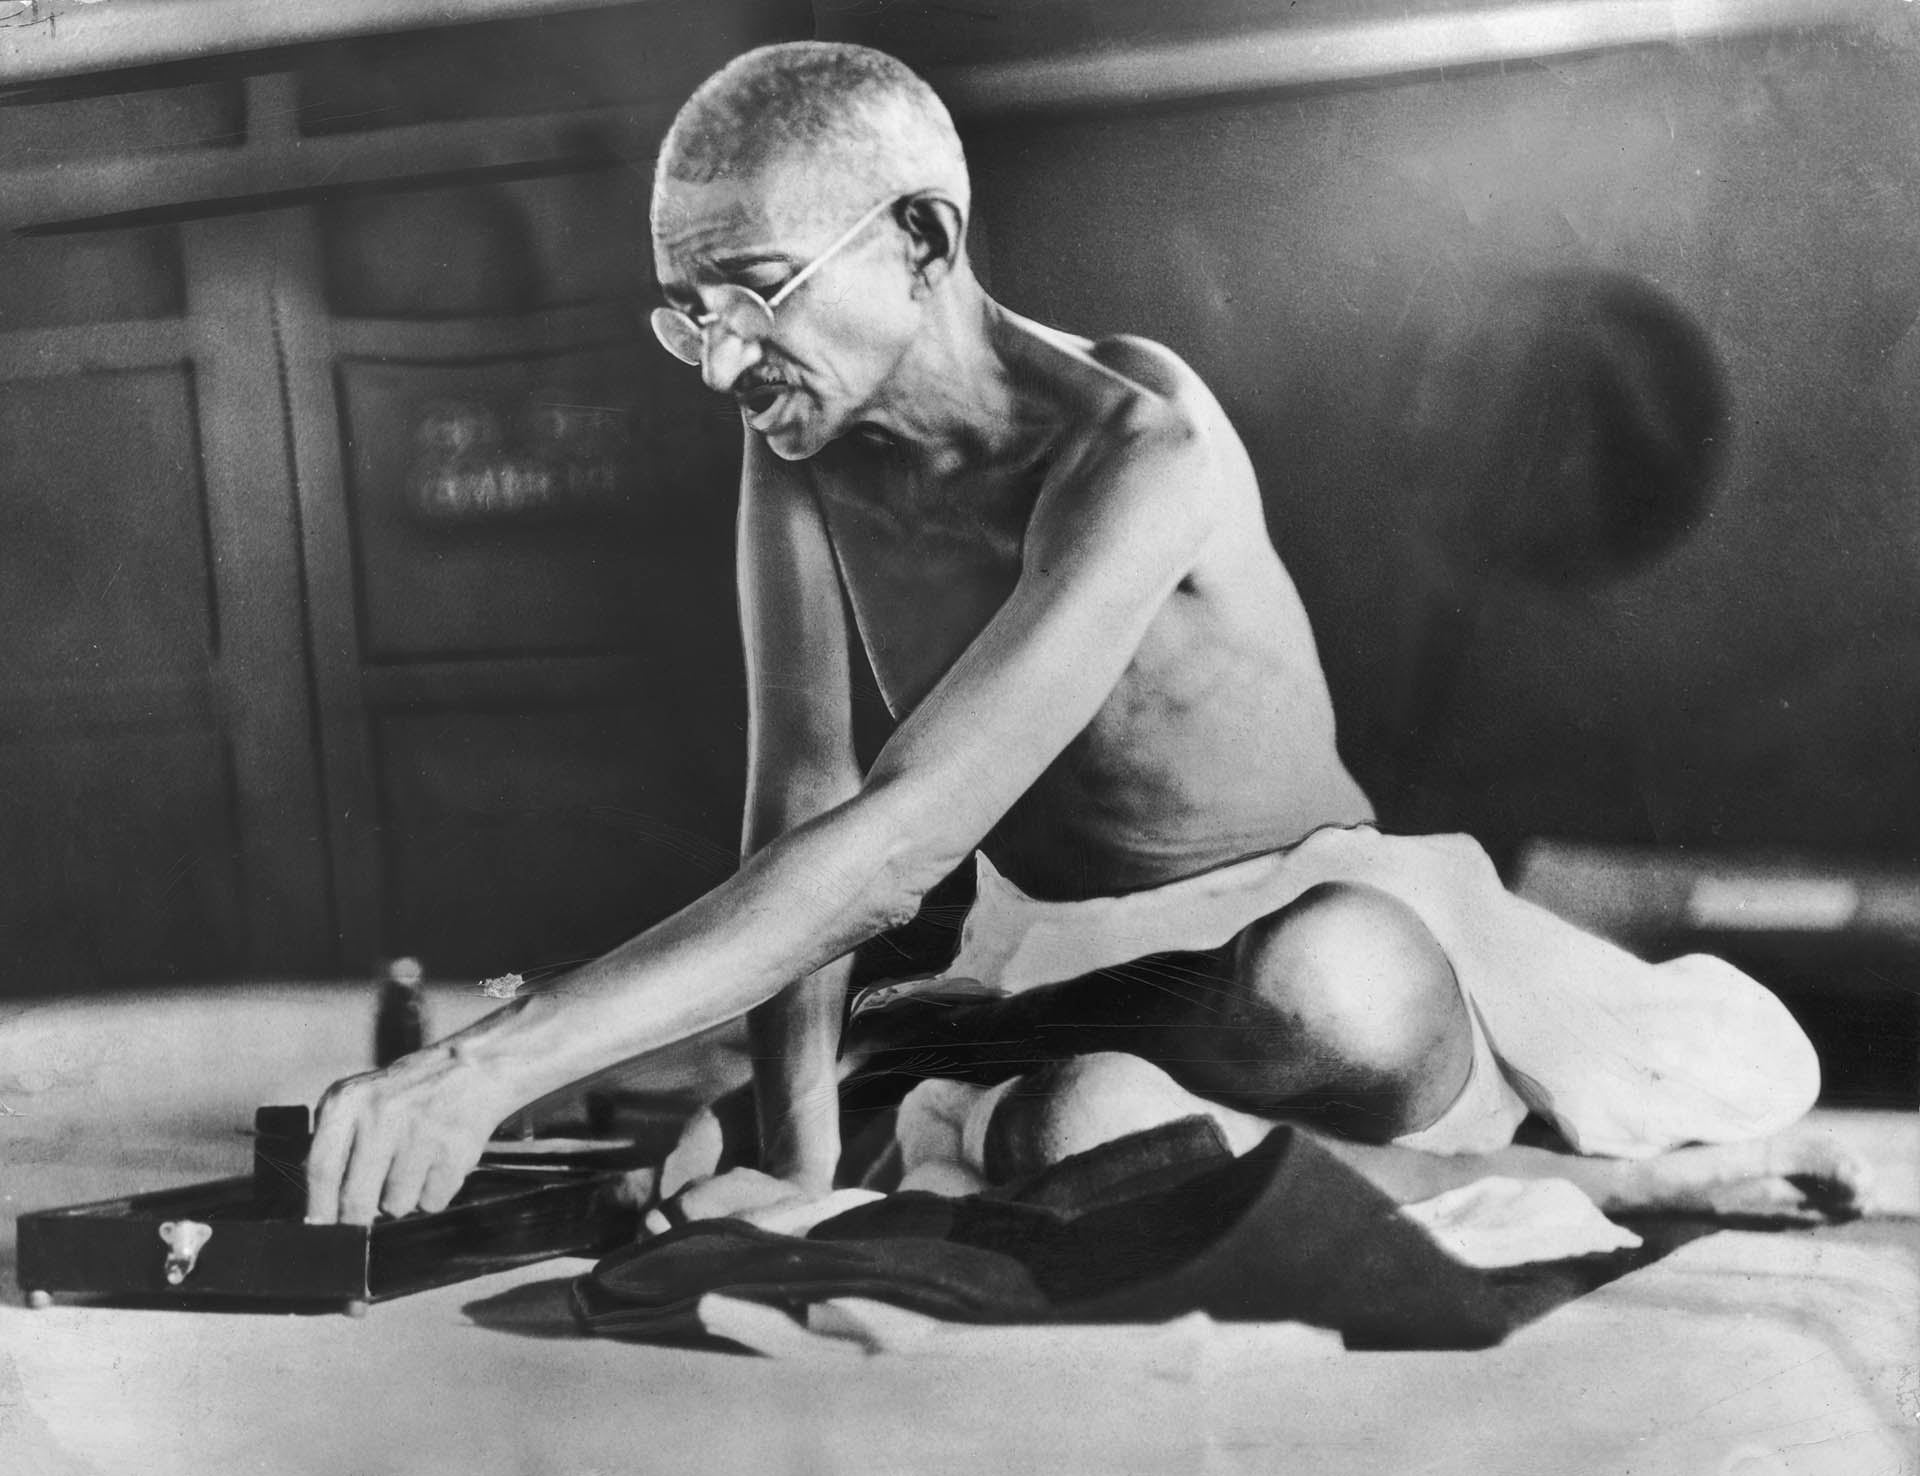 Reducido a un mero símbolo o no, las ideas de Gandhi son más relevantes que nunca debido a la llegada al poder del BJP de Modi, un líder surgido de la organización Rashtriya Swayamsevak Sangh (RSS) conocida por su hinduismo radical. (Foto por Hulton Archive/Getty Images)